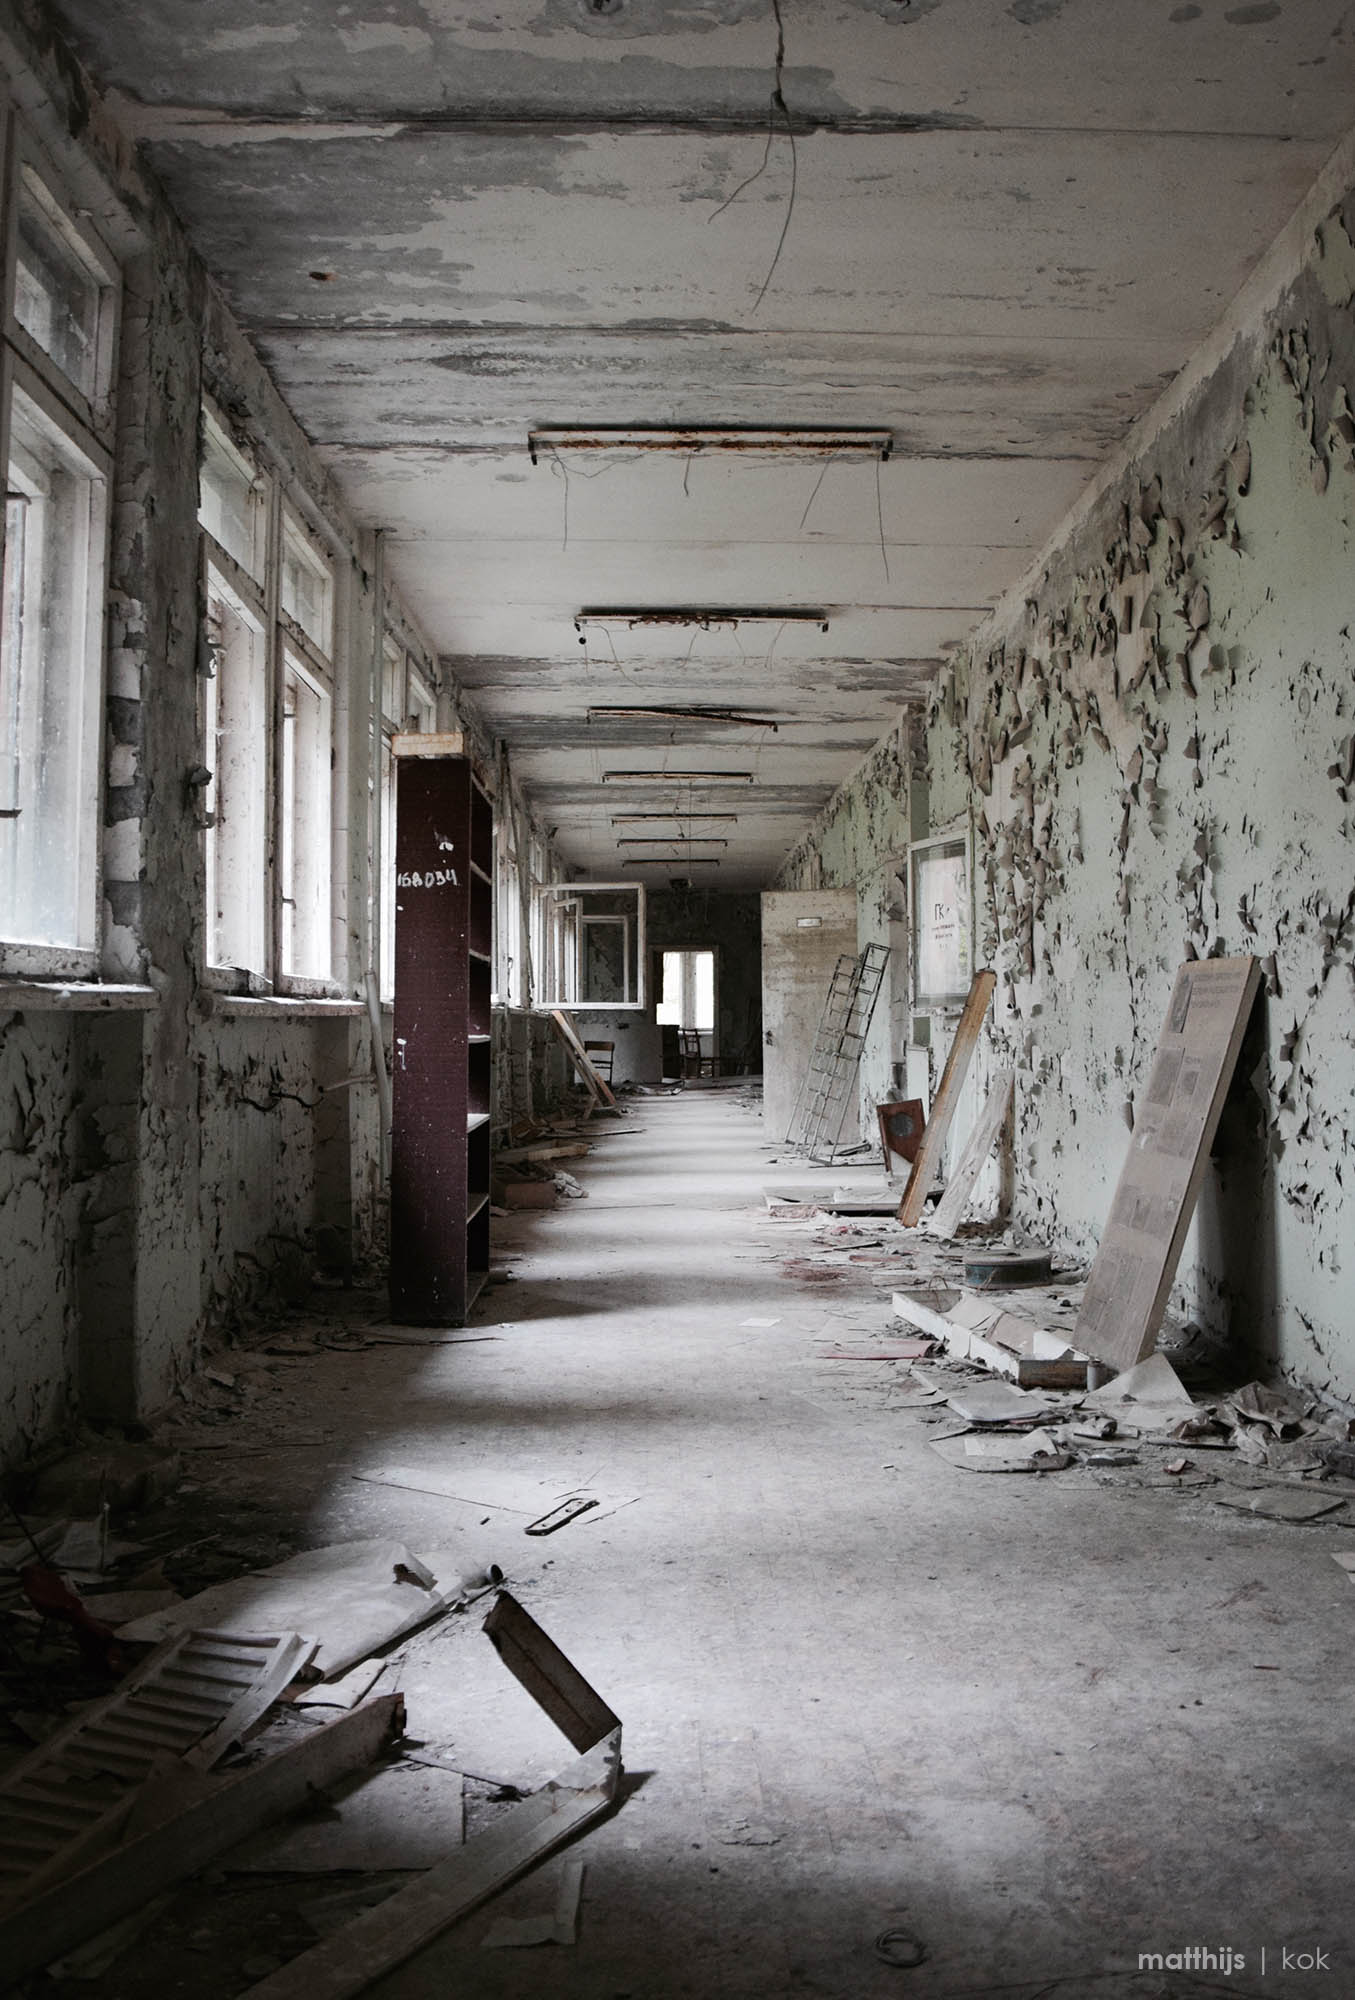 Hospital no.126, Chernobyl | Photo by Matthijs Kok